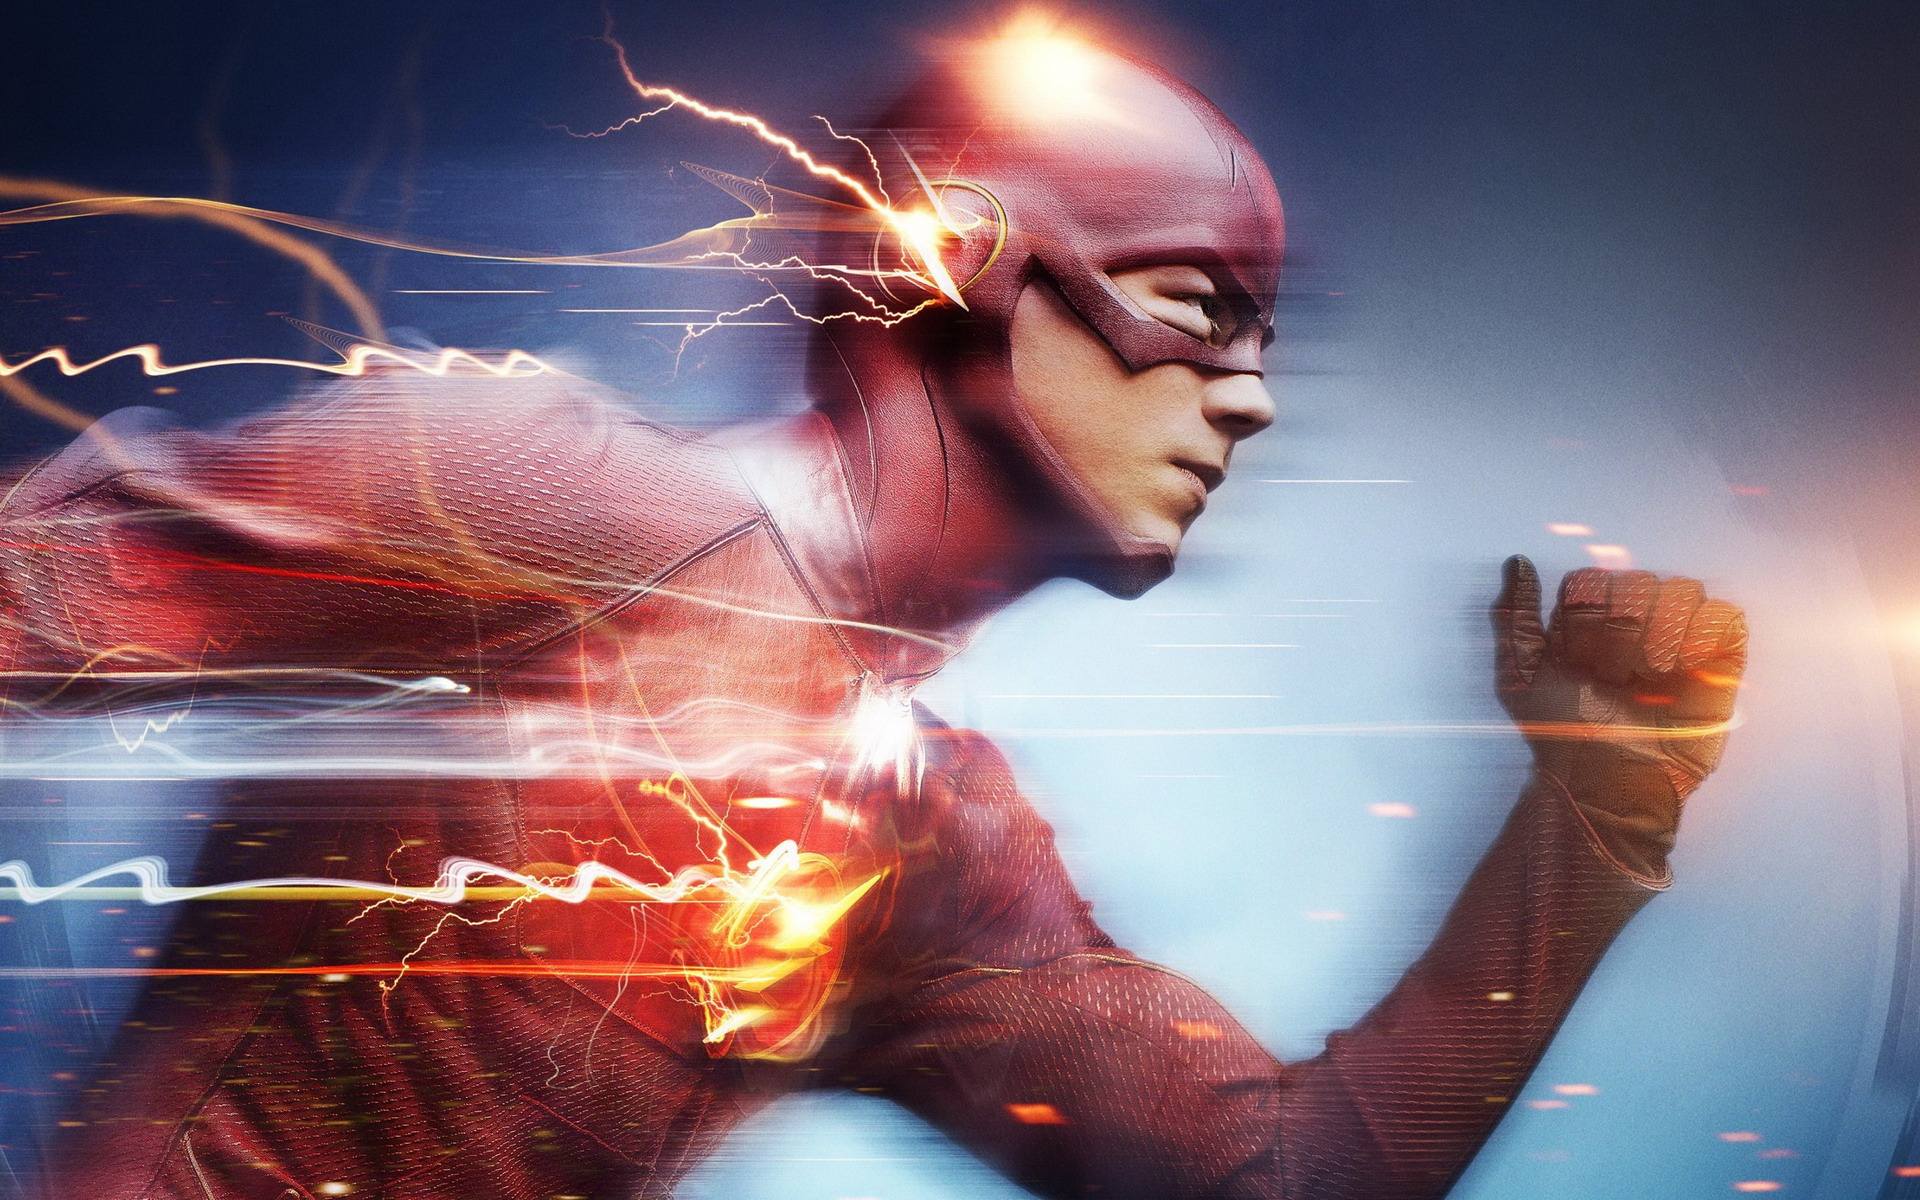 漫威dc电影中能够高速移动的超级英雄,闪电侠并不是最快的!